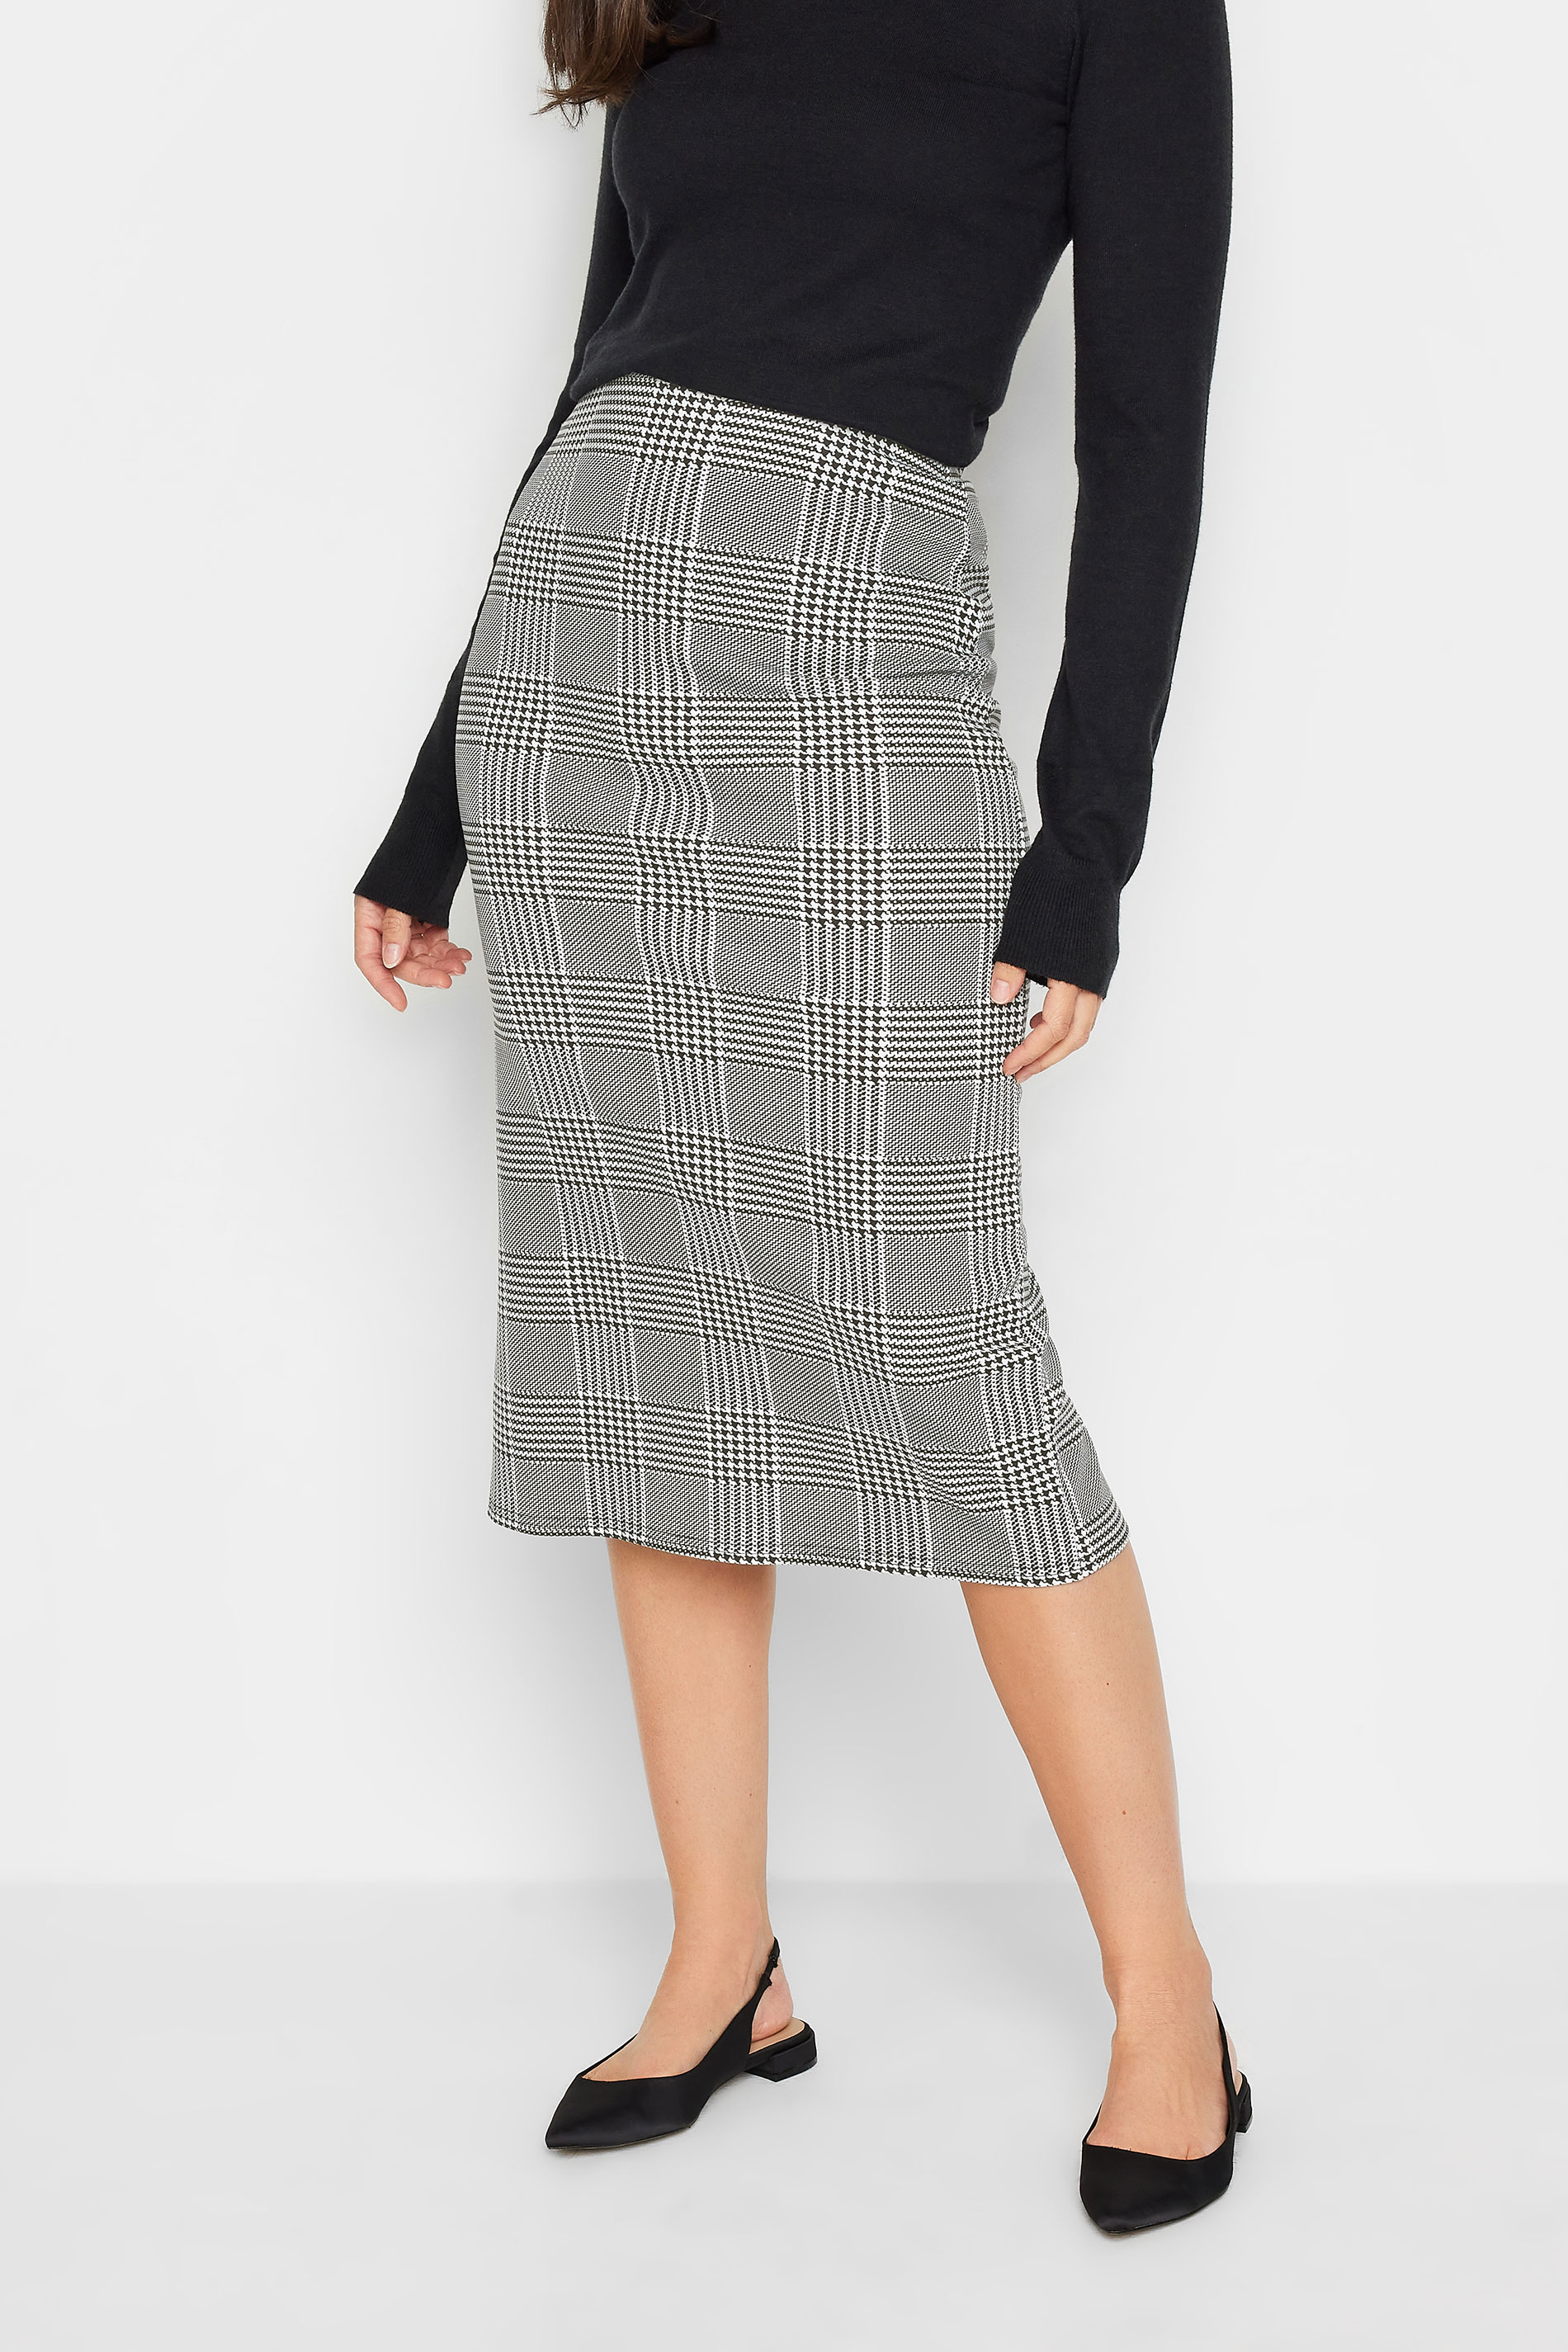 LTS Tall Women's Black Check Print Midi Skirt | Long Tall Sally 1